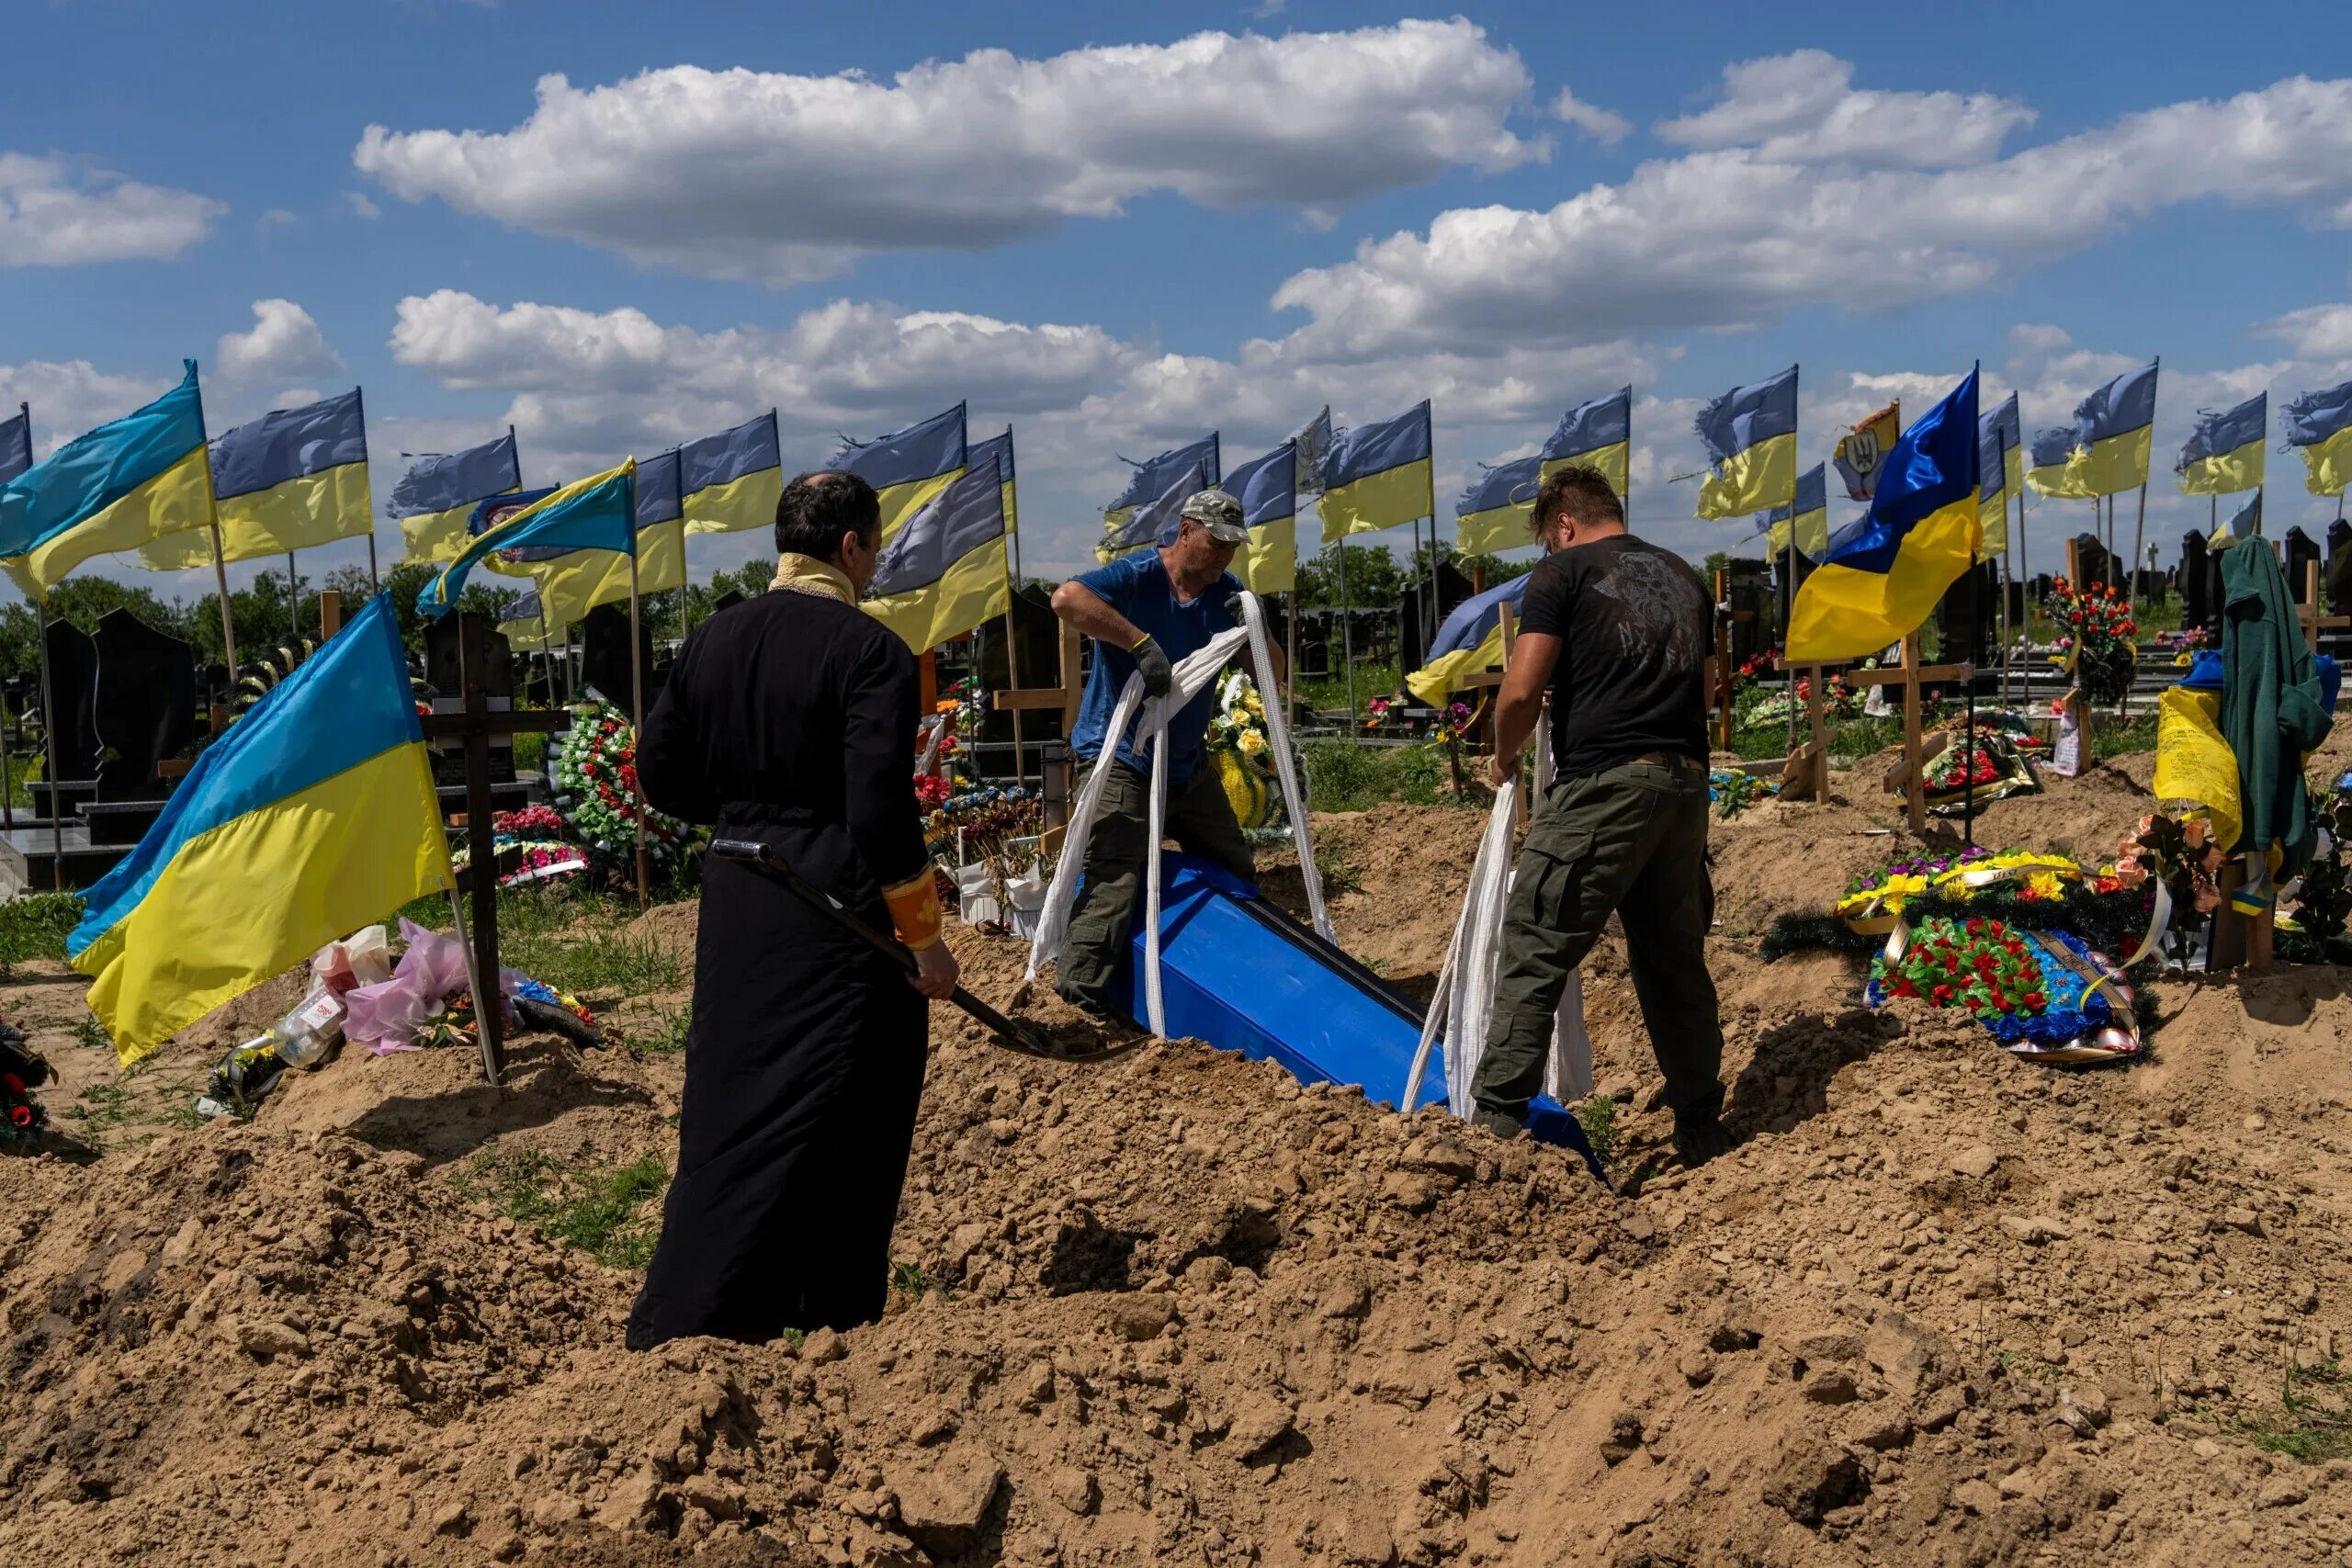 Украина похороны солдат 2022. Кладбище на Украине с флагами. Украинское кладбище с флагами. Ситуация на украинцев